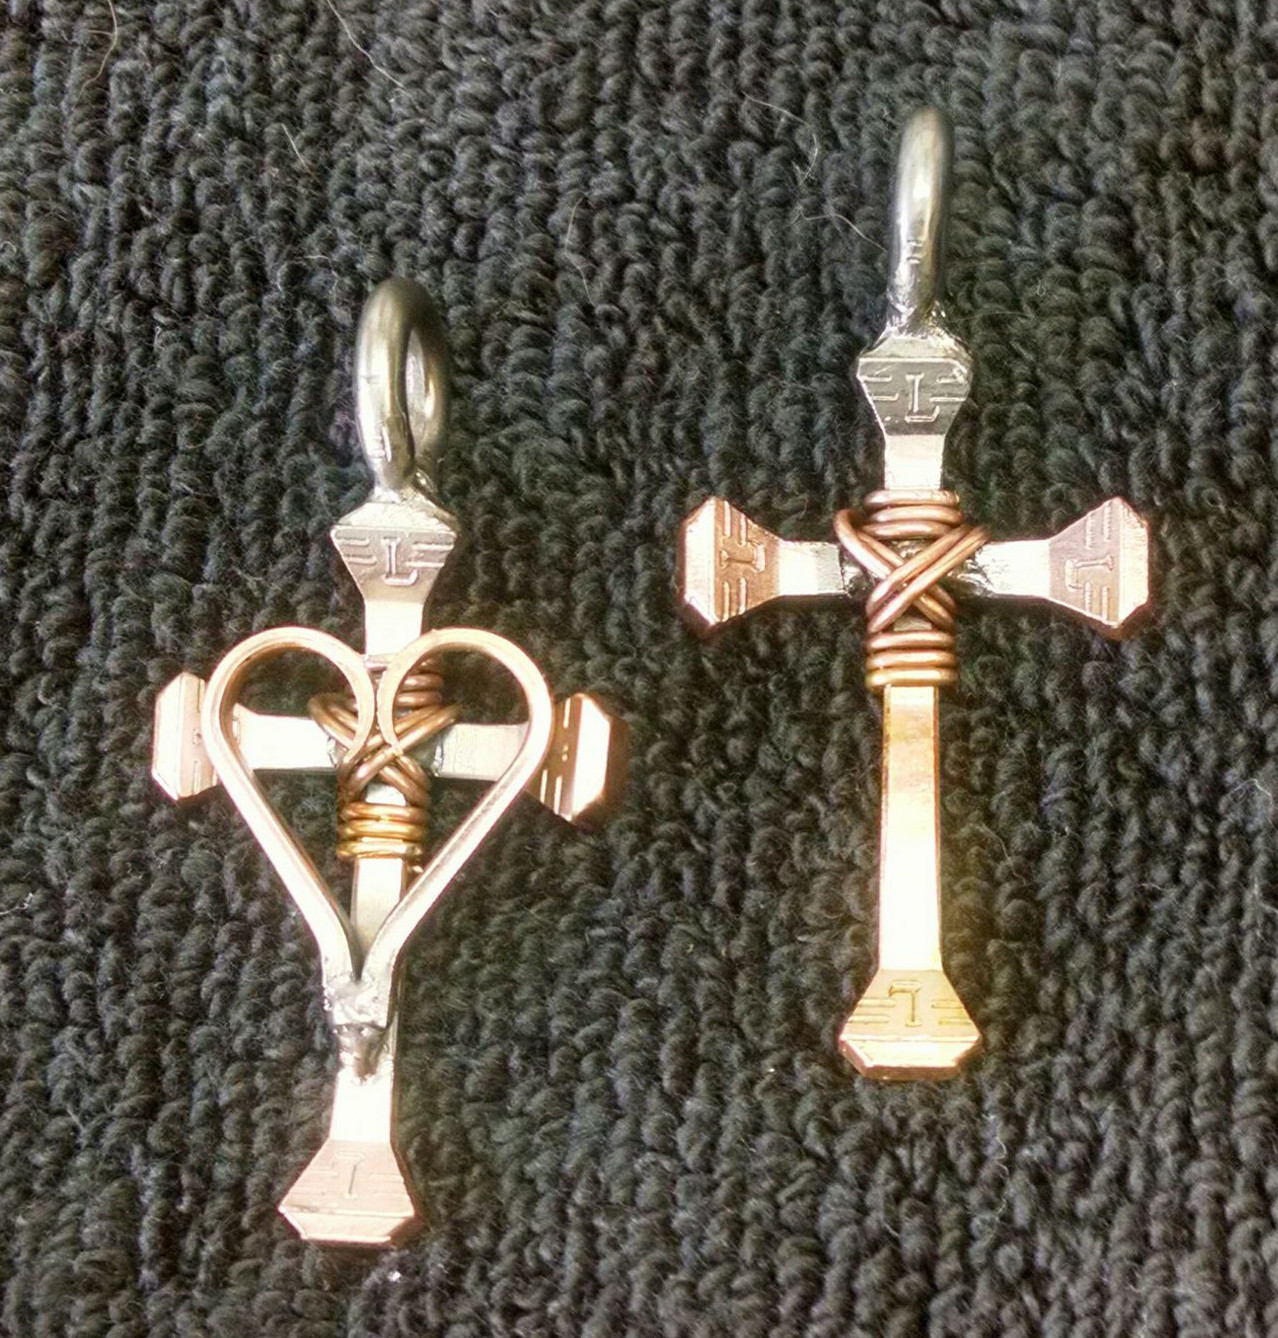 Copper cross pendants